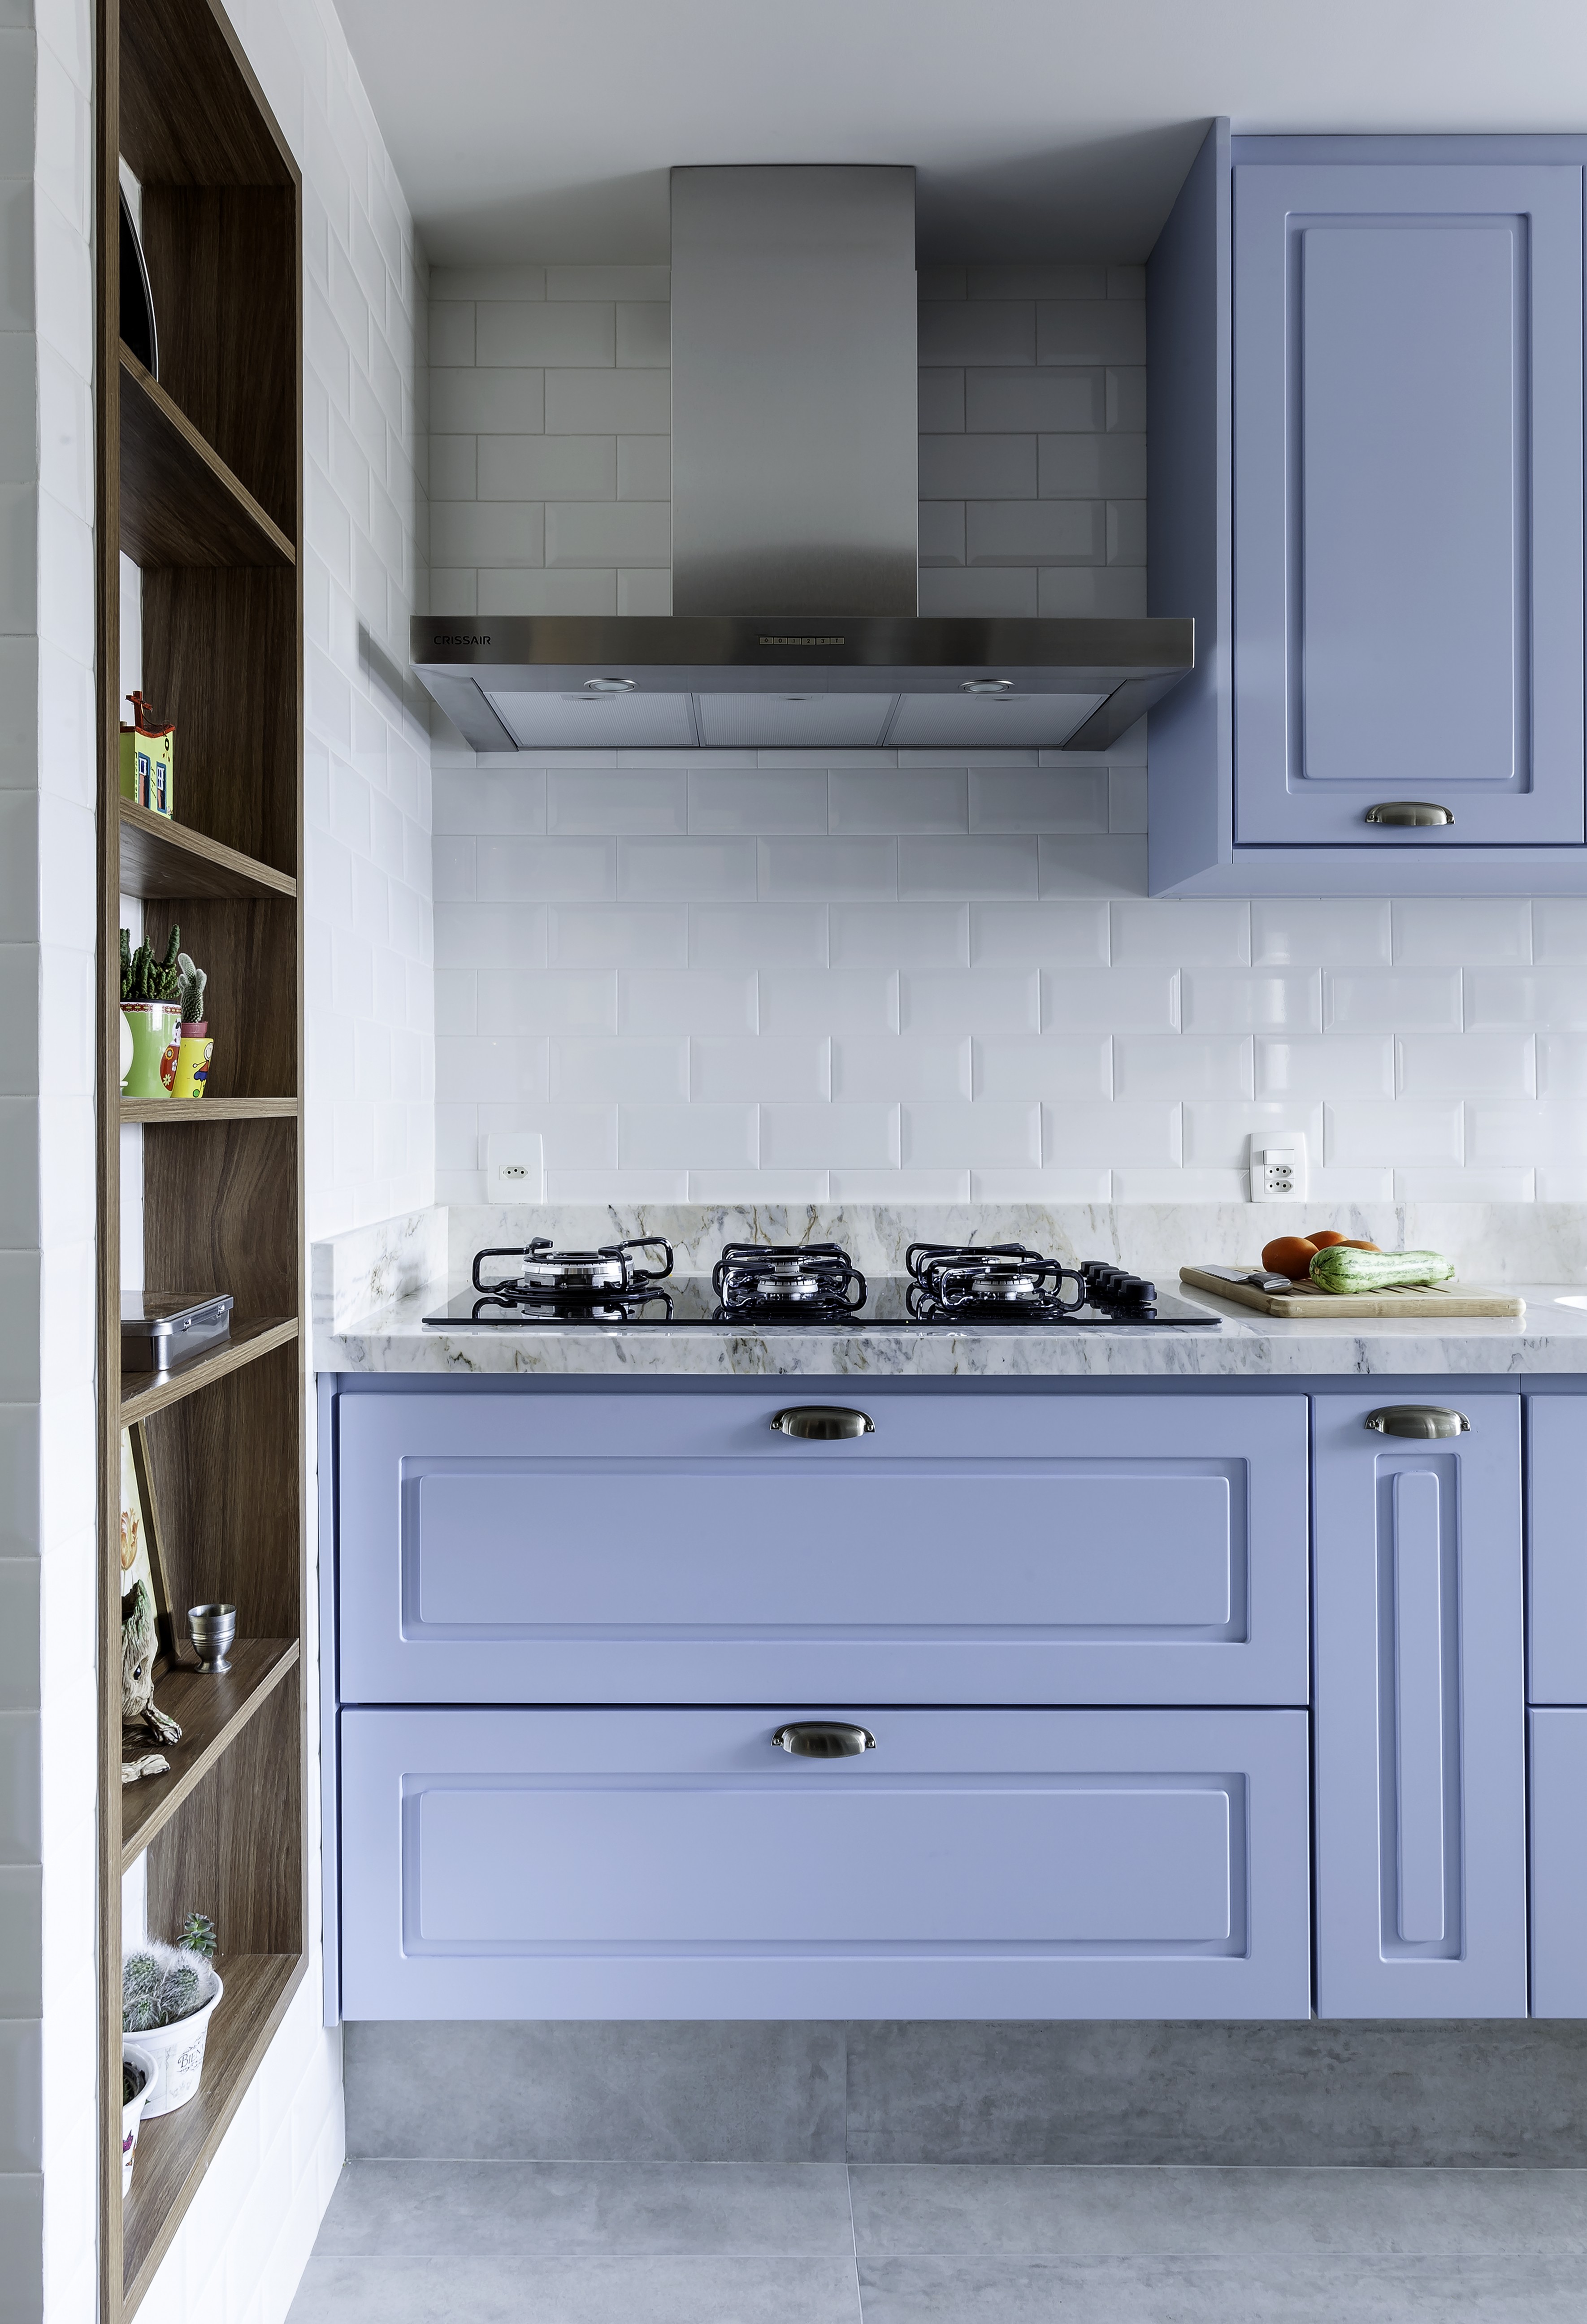 Décor do dia: cozinha com armário azul e subway tiles (Foto: Carlos Piratininga )